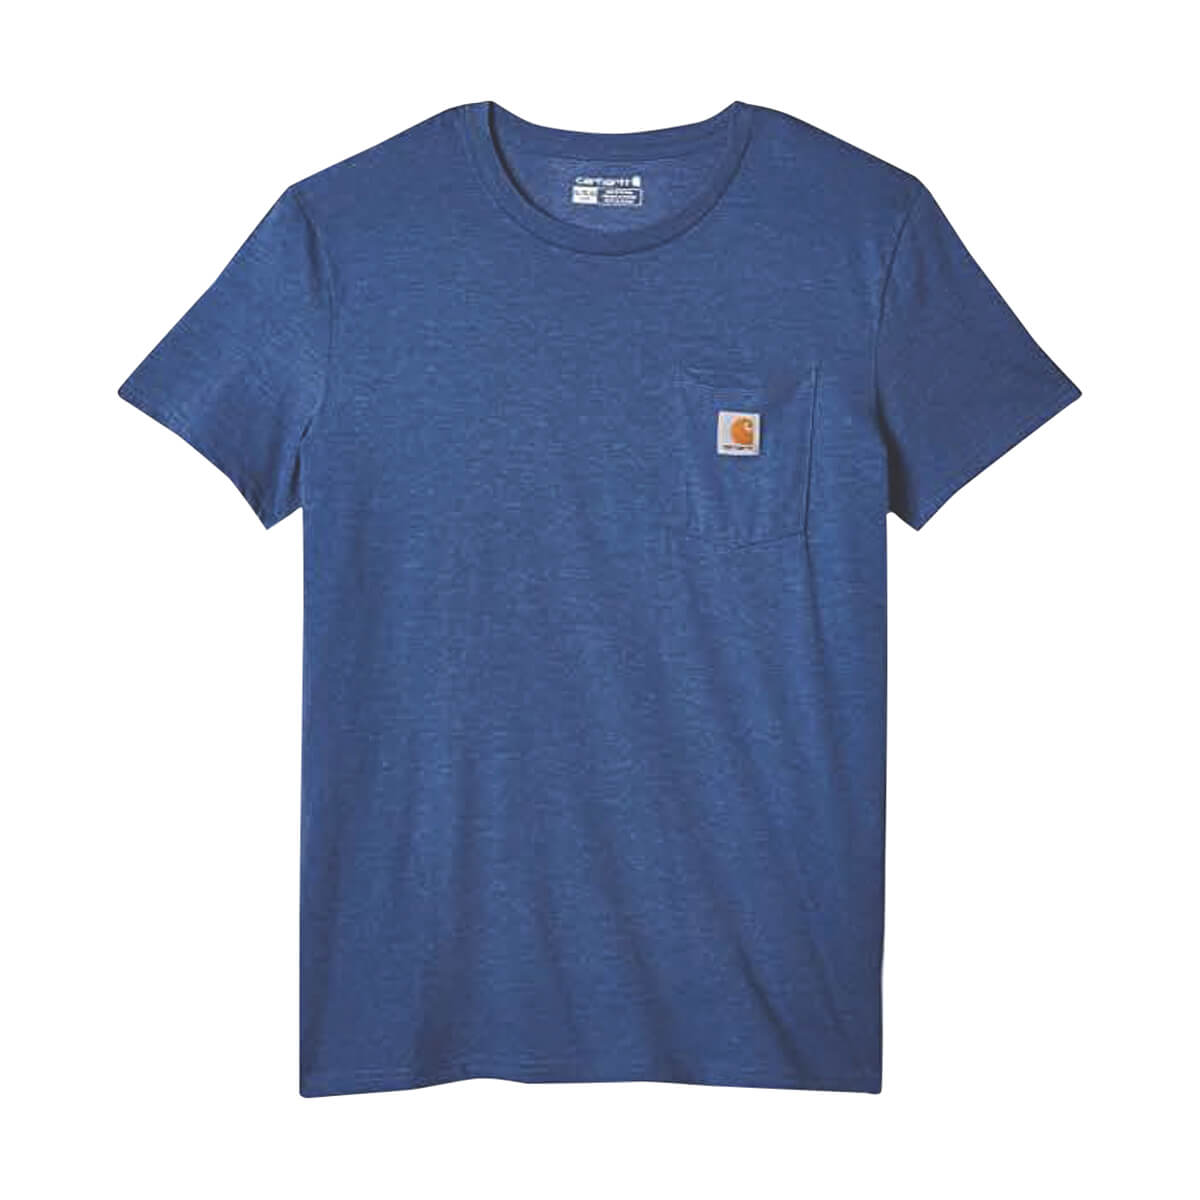 Carhartt Boys Short-Sleeve Pocket T-Shirt - Blue